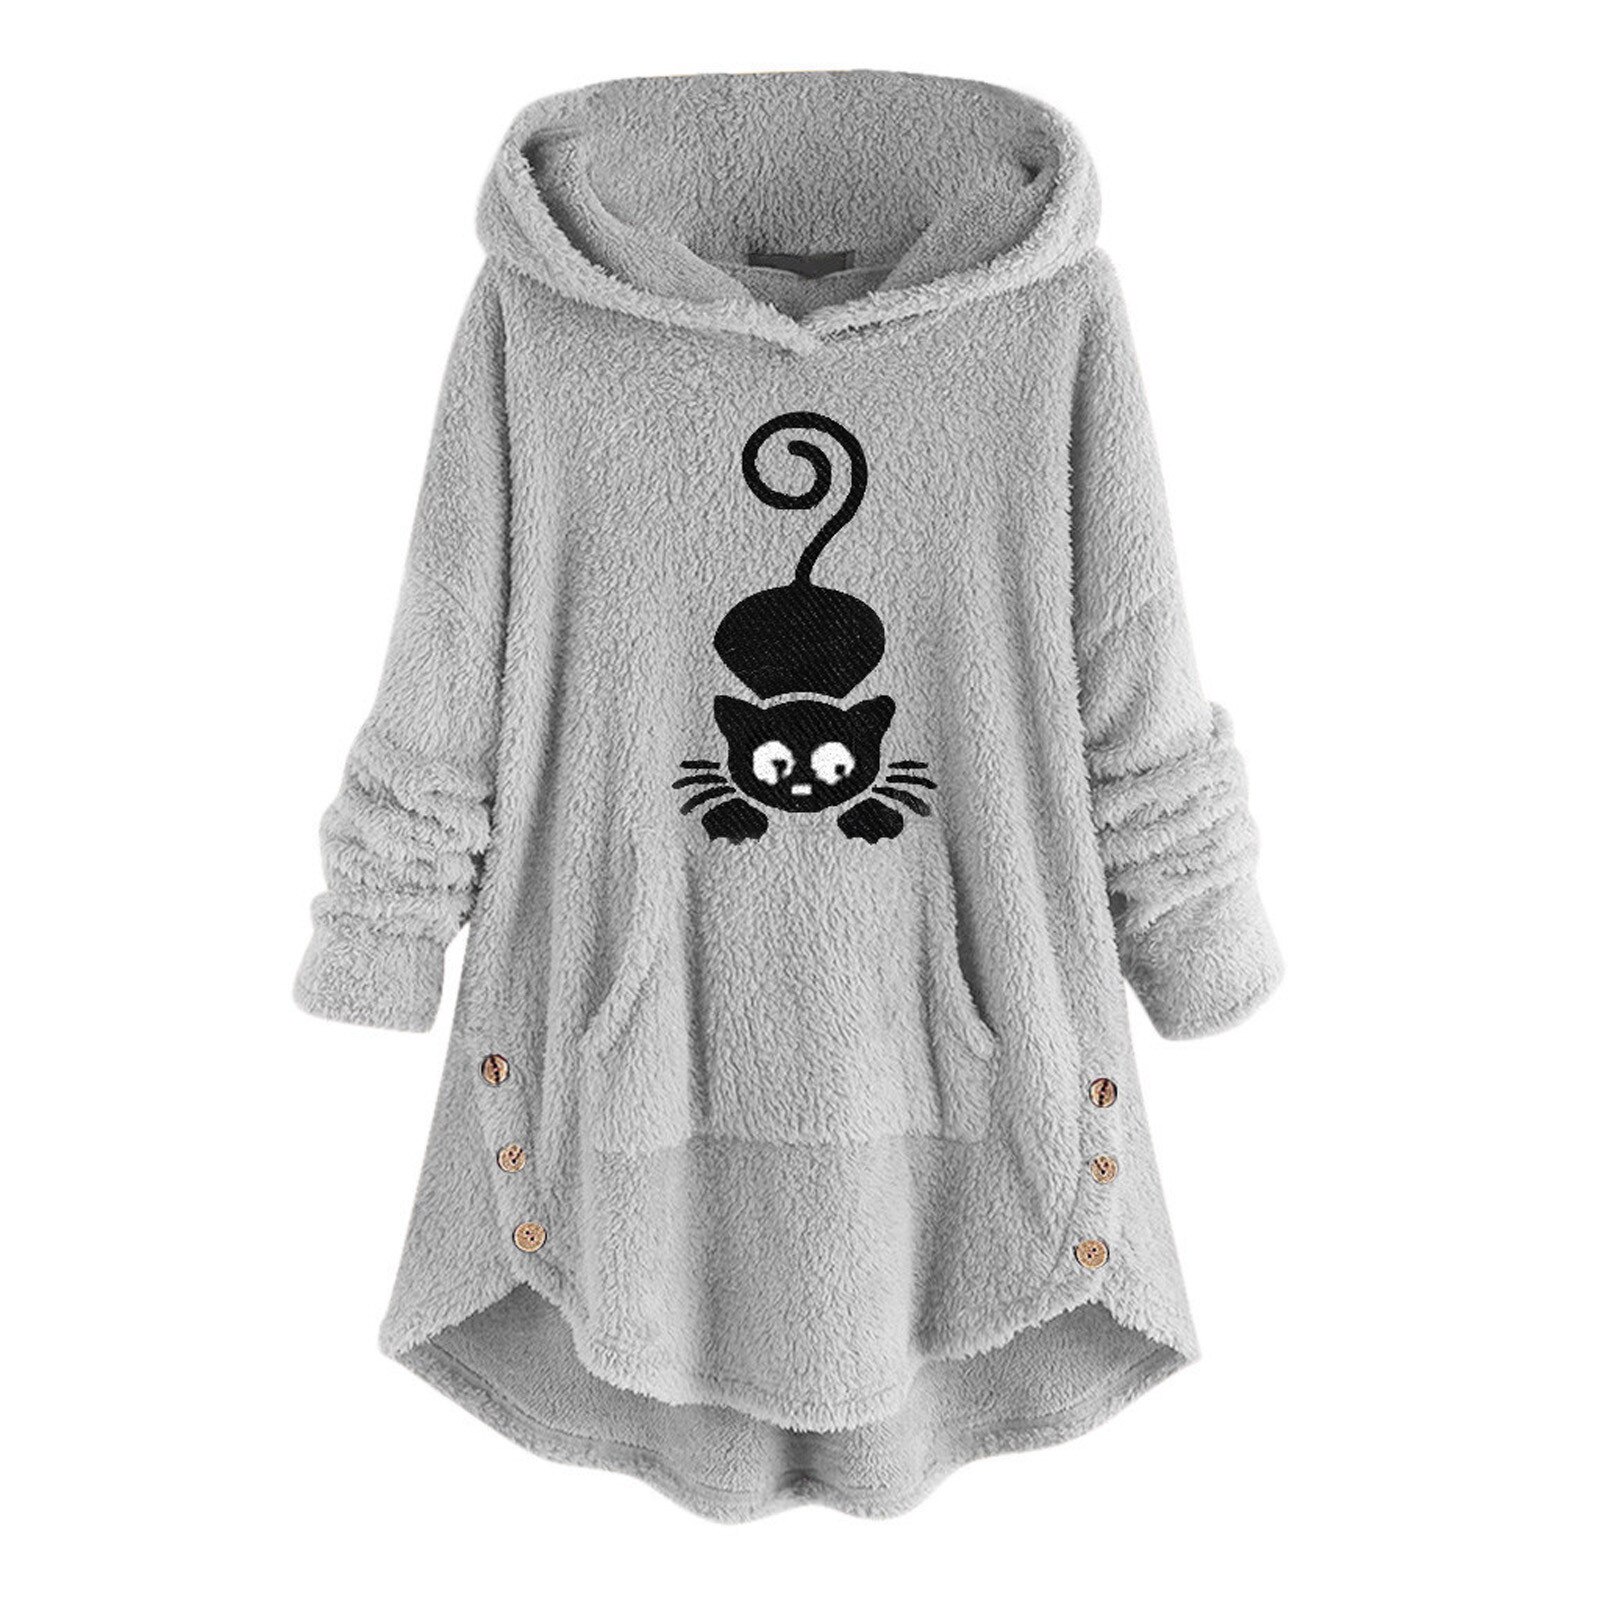 Women Black Cat Embroidery Pocket Coat Fluffy Hooded Plus Size Long Sleeve Winter Warm Pullover Kawaii Hoodies Fleece Sweatshirt